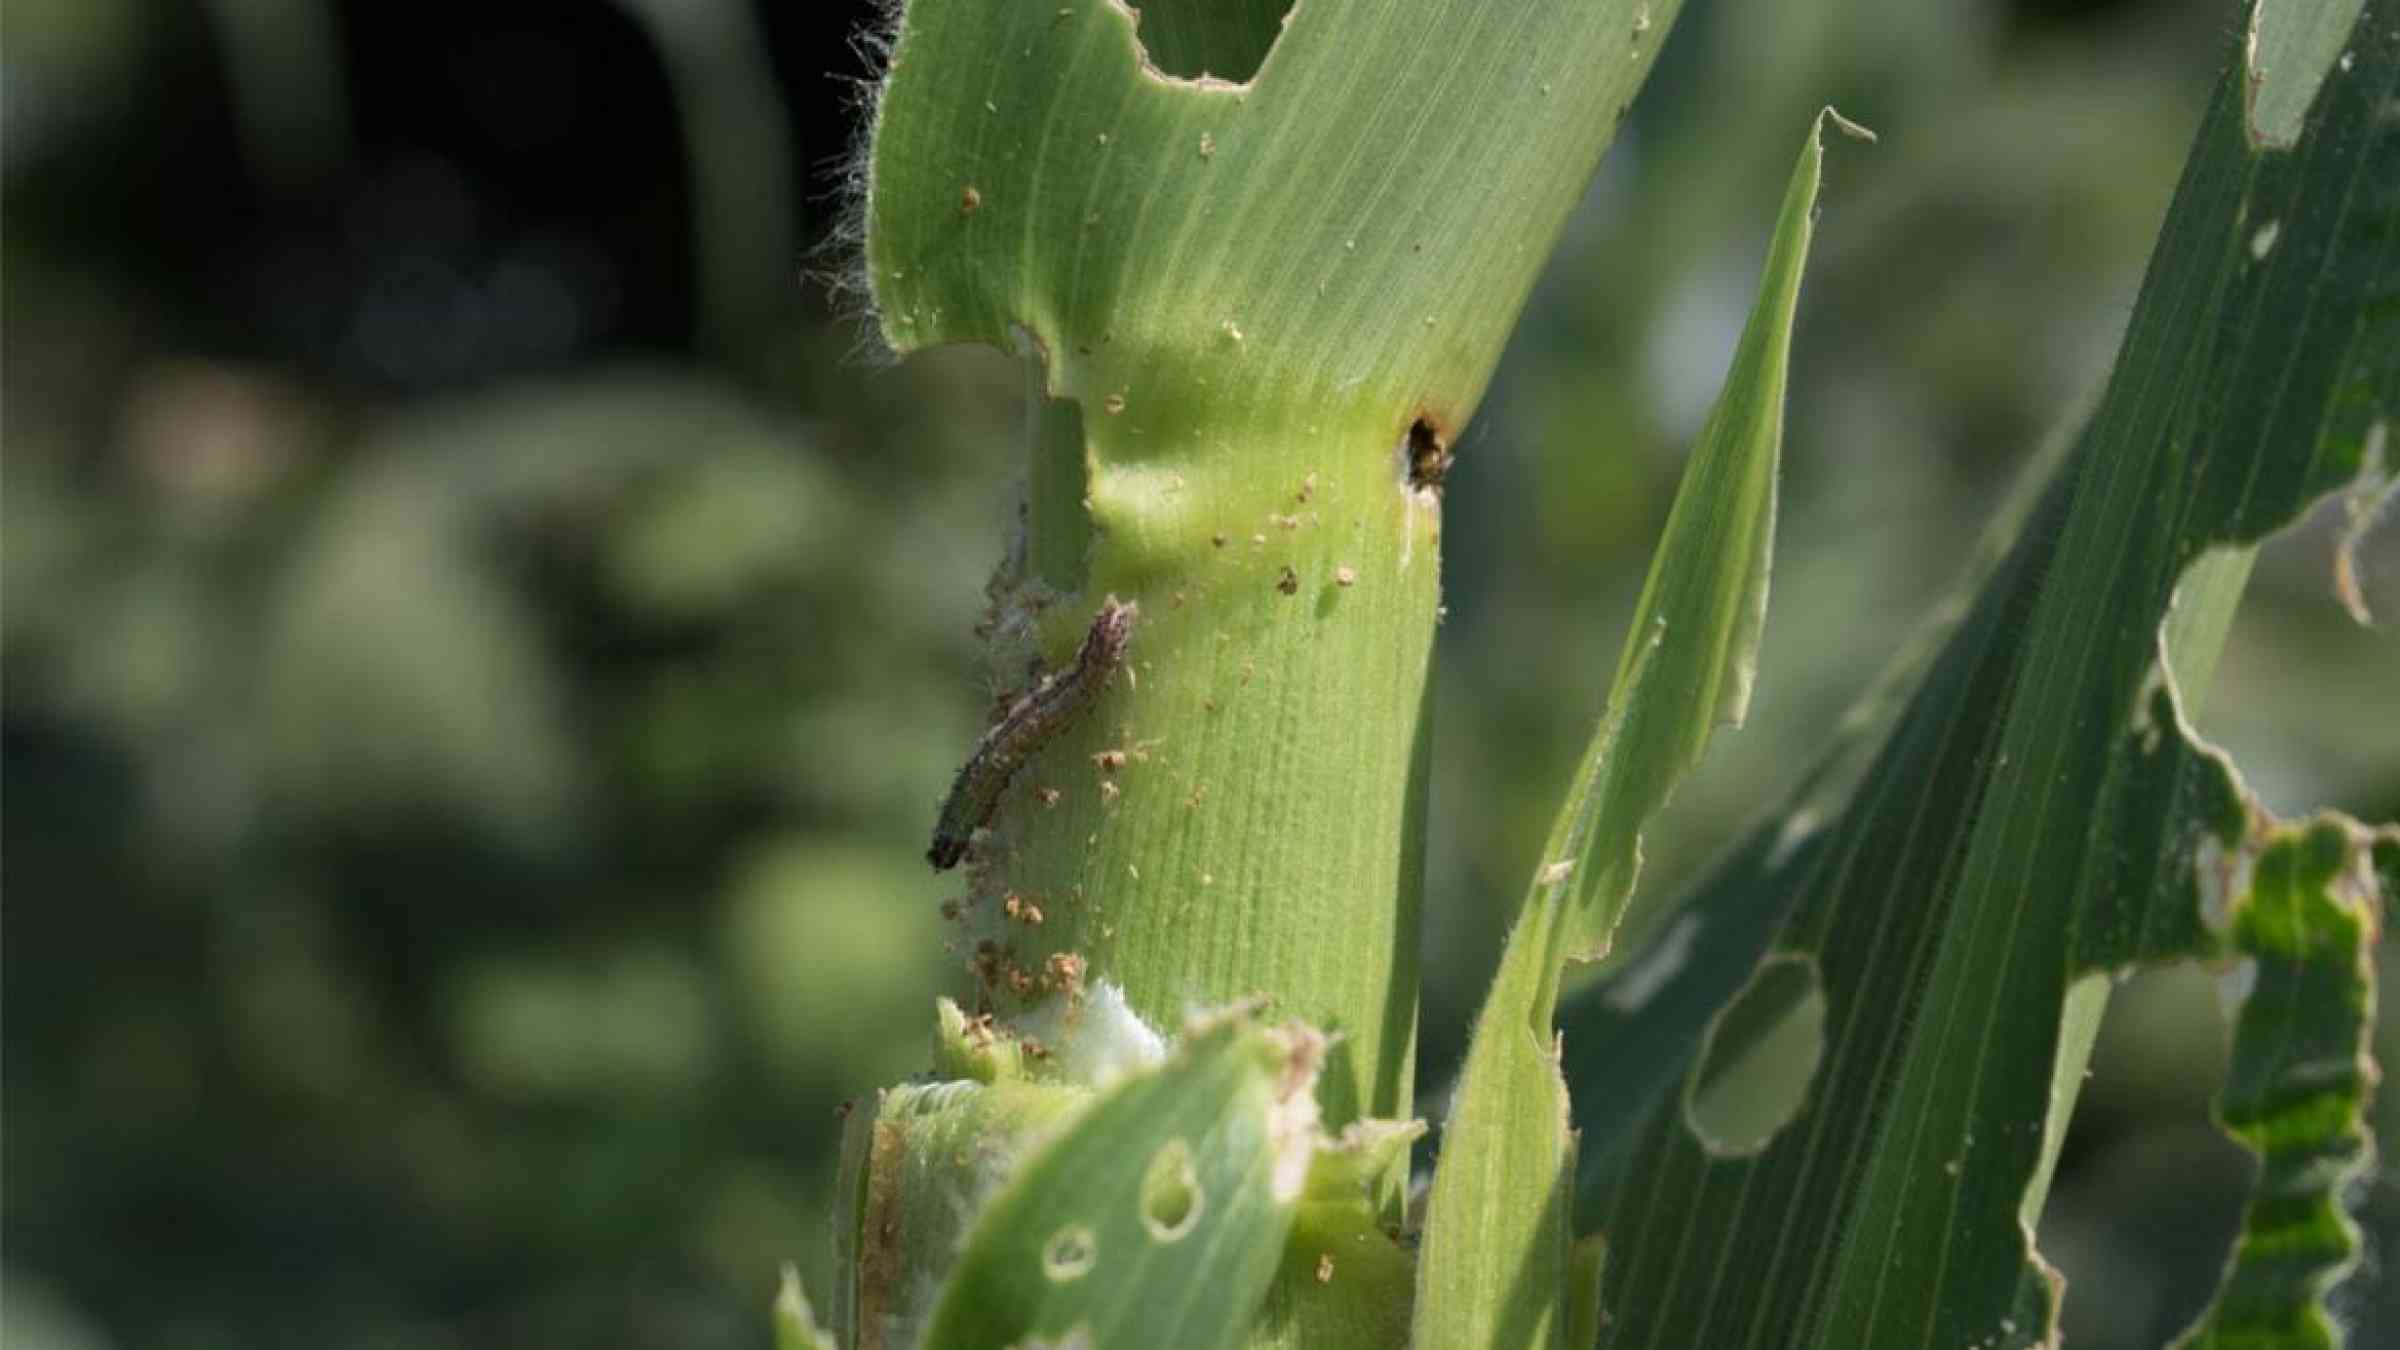 Armyworm feeding on a corn plant